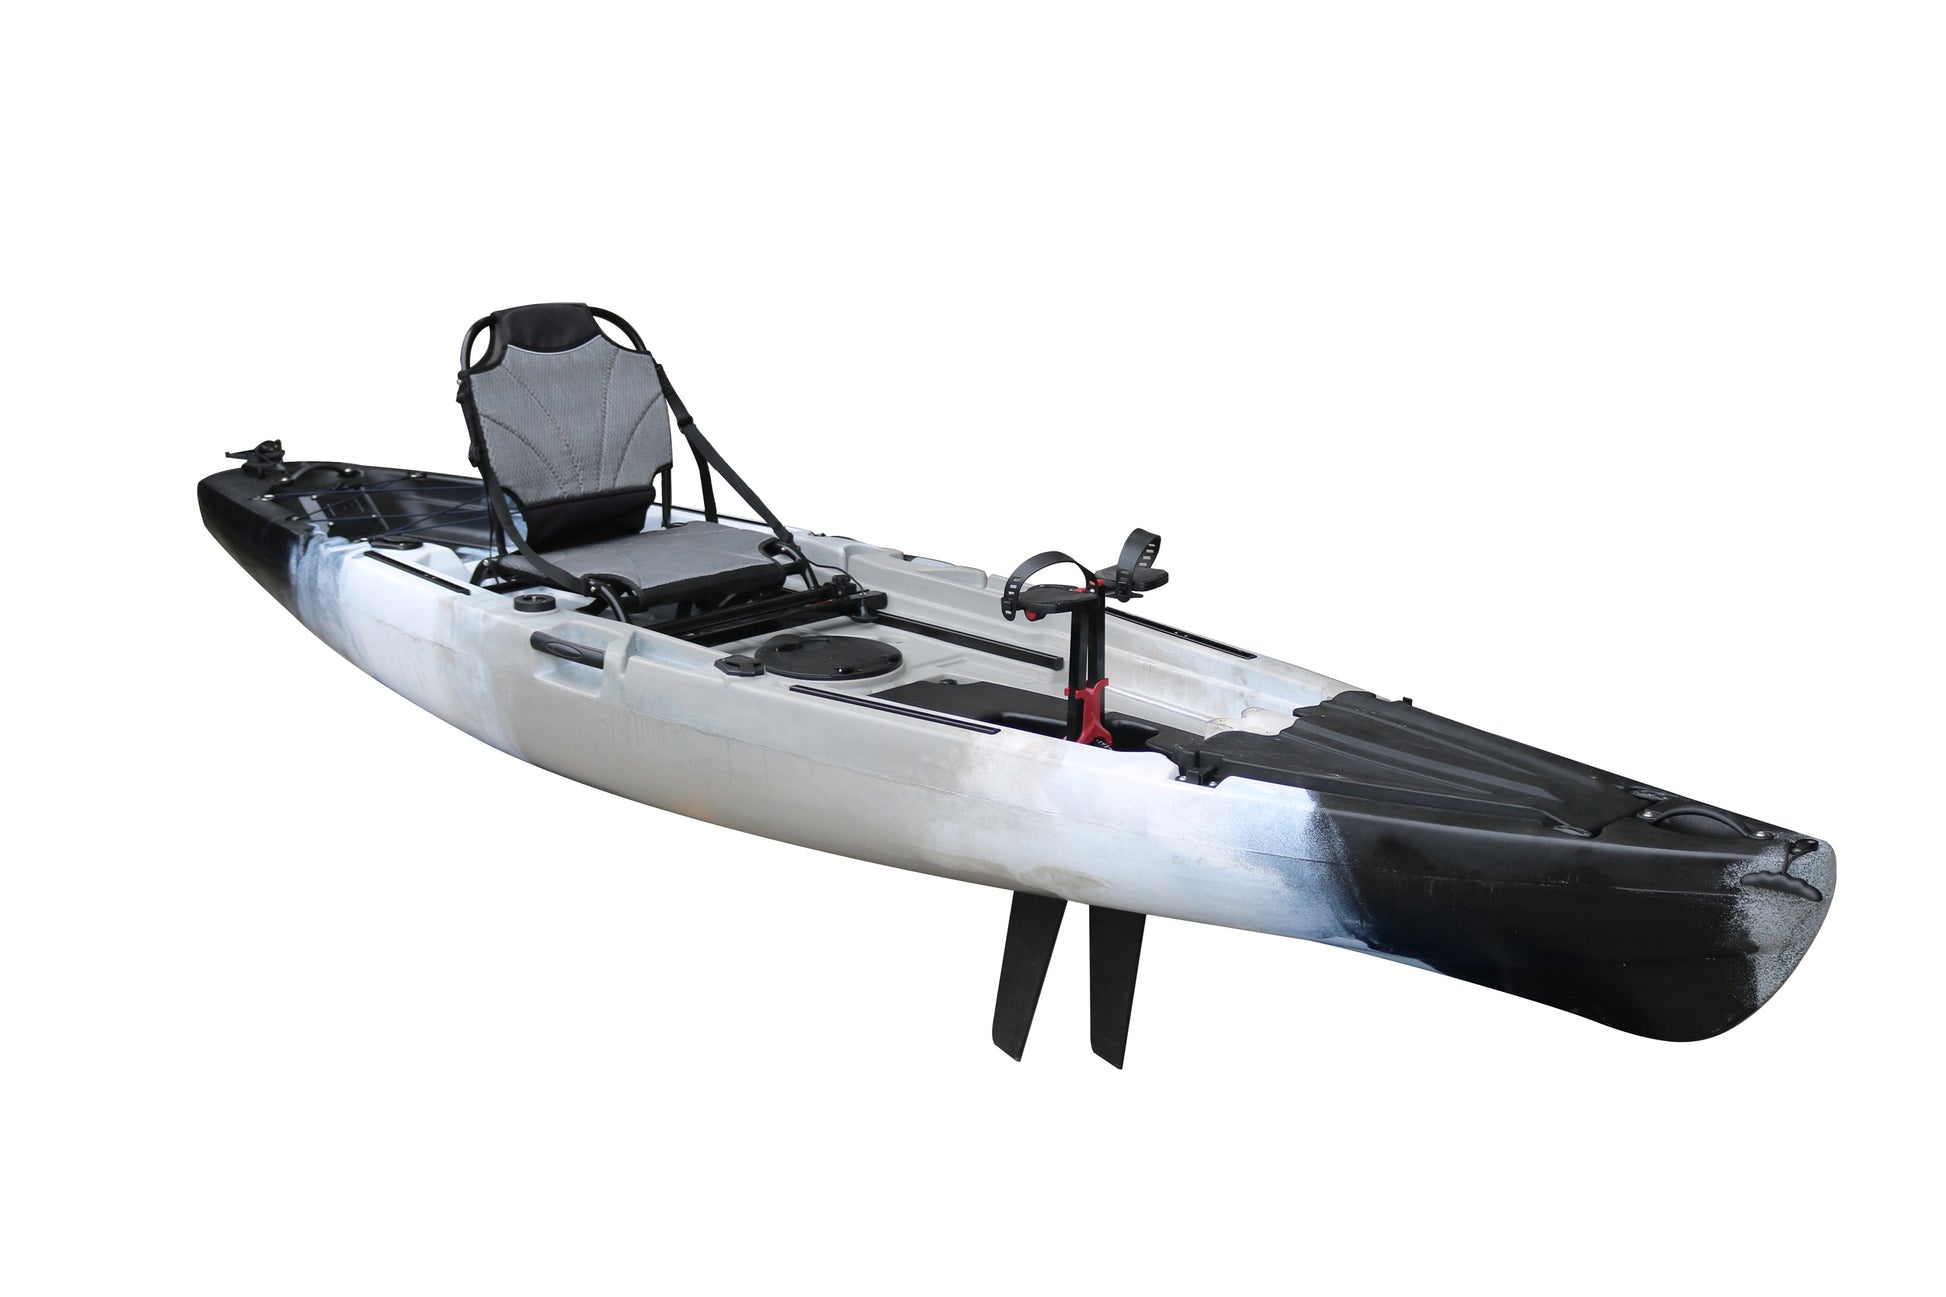 Vicking Fishing Kayak 12FT New Kayak De Pesc Con Pedal Foot 2